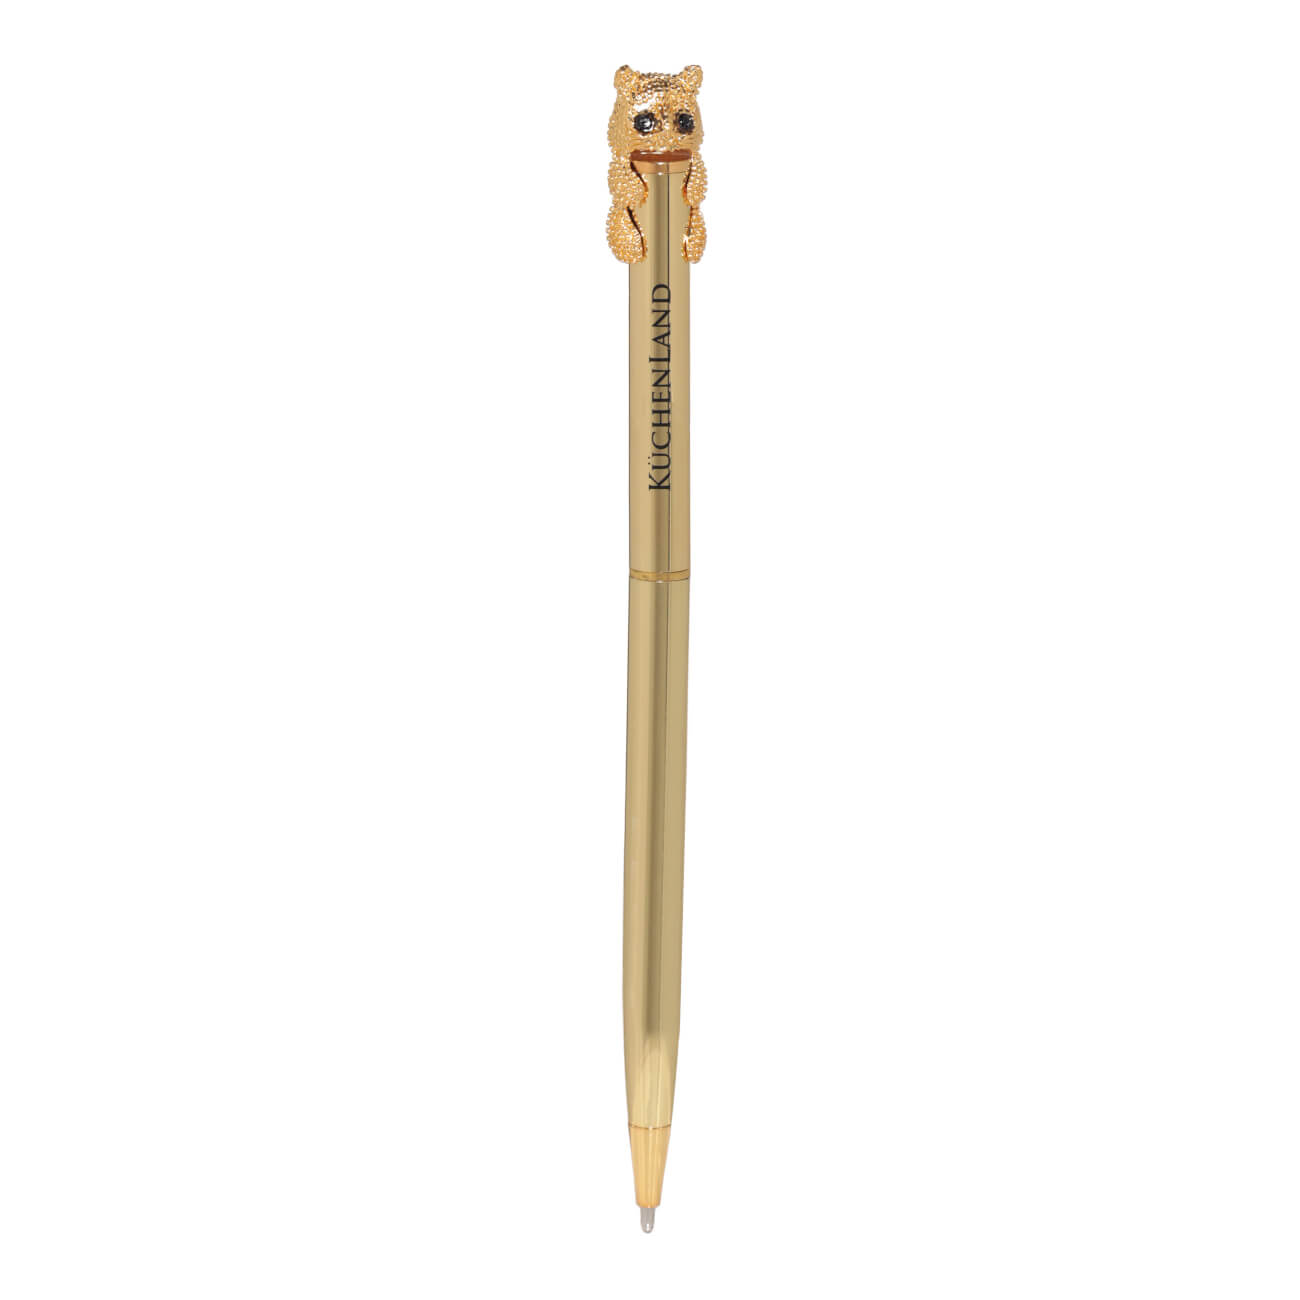 Ручка шариковая, 14 см, с фигуркой, золотистая, Кот, Draw figure ручка шариковая подарочная поворотная в кожзам футляре